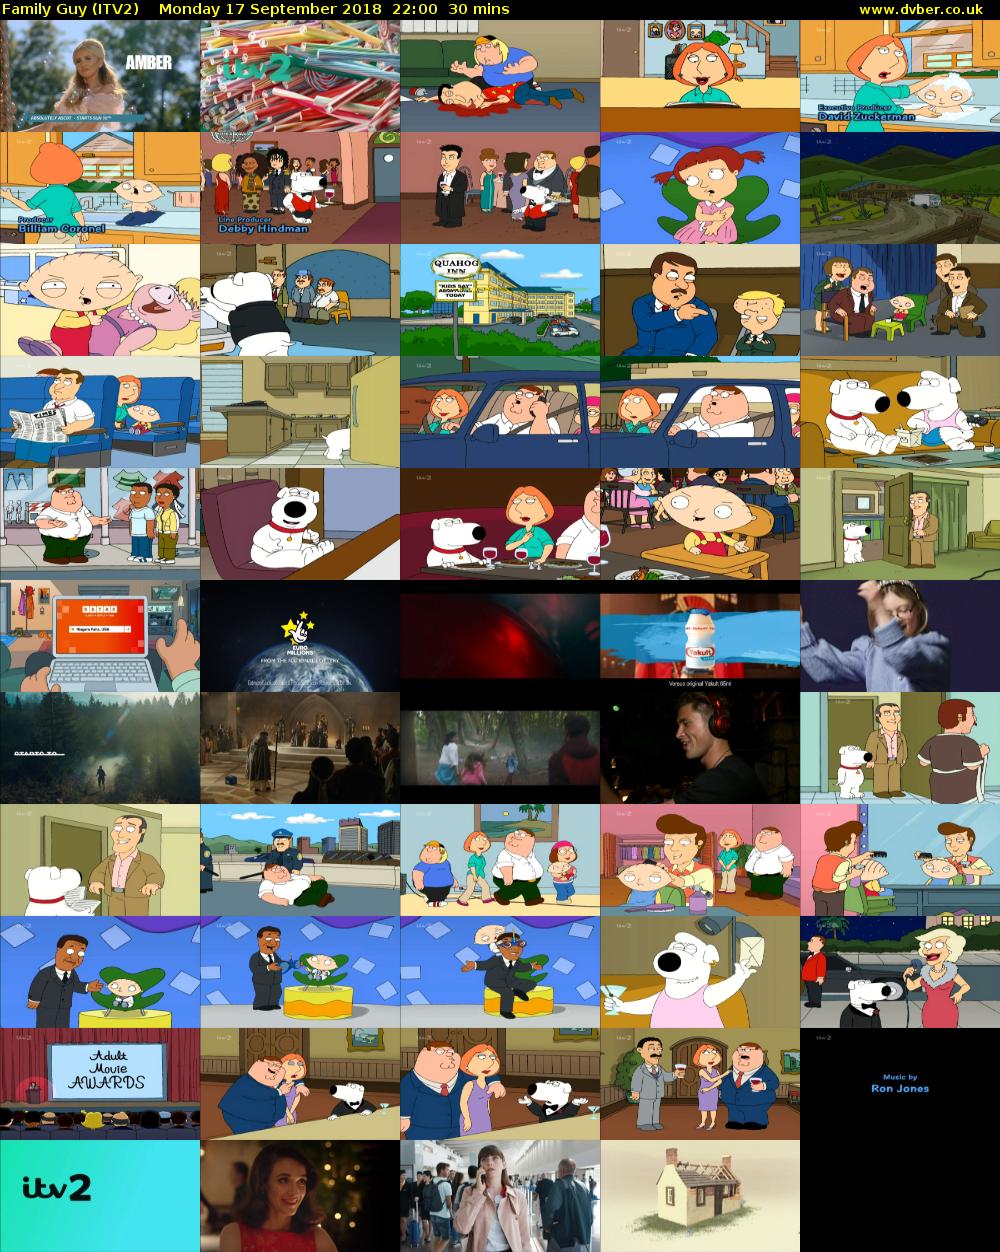 Family Guy (ITV2) Monday 17 September 2018 22:00 - 22:30